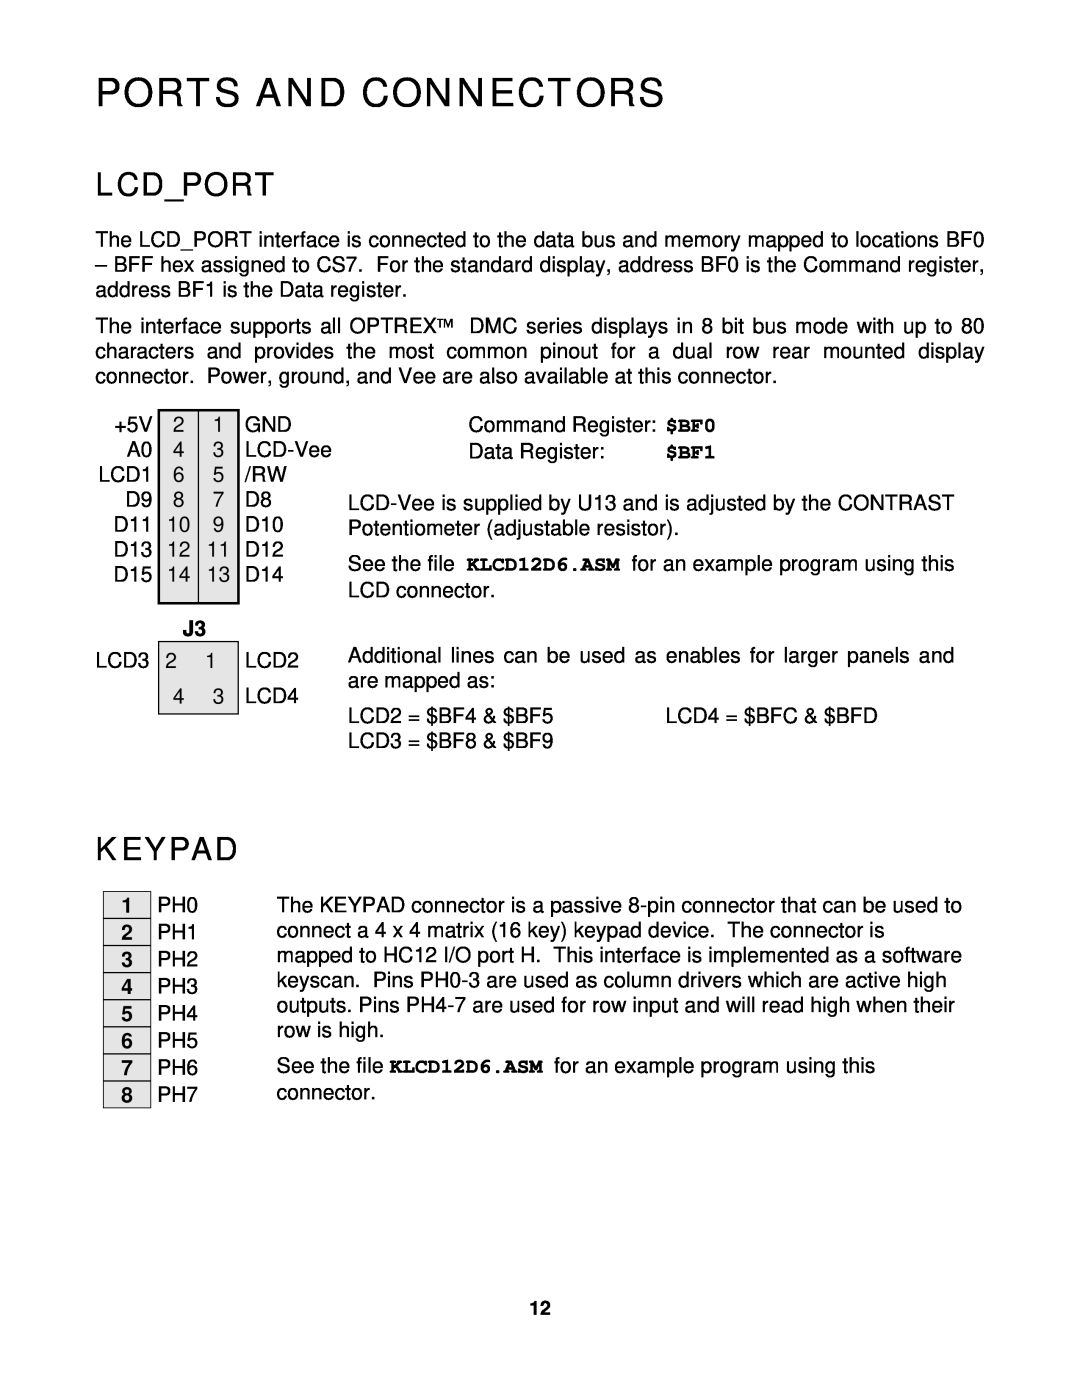 Motorola CME-12D60 manual Ports And Connectors, Lcdport, Keypad 